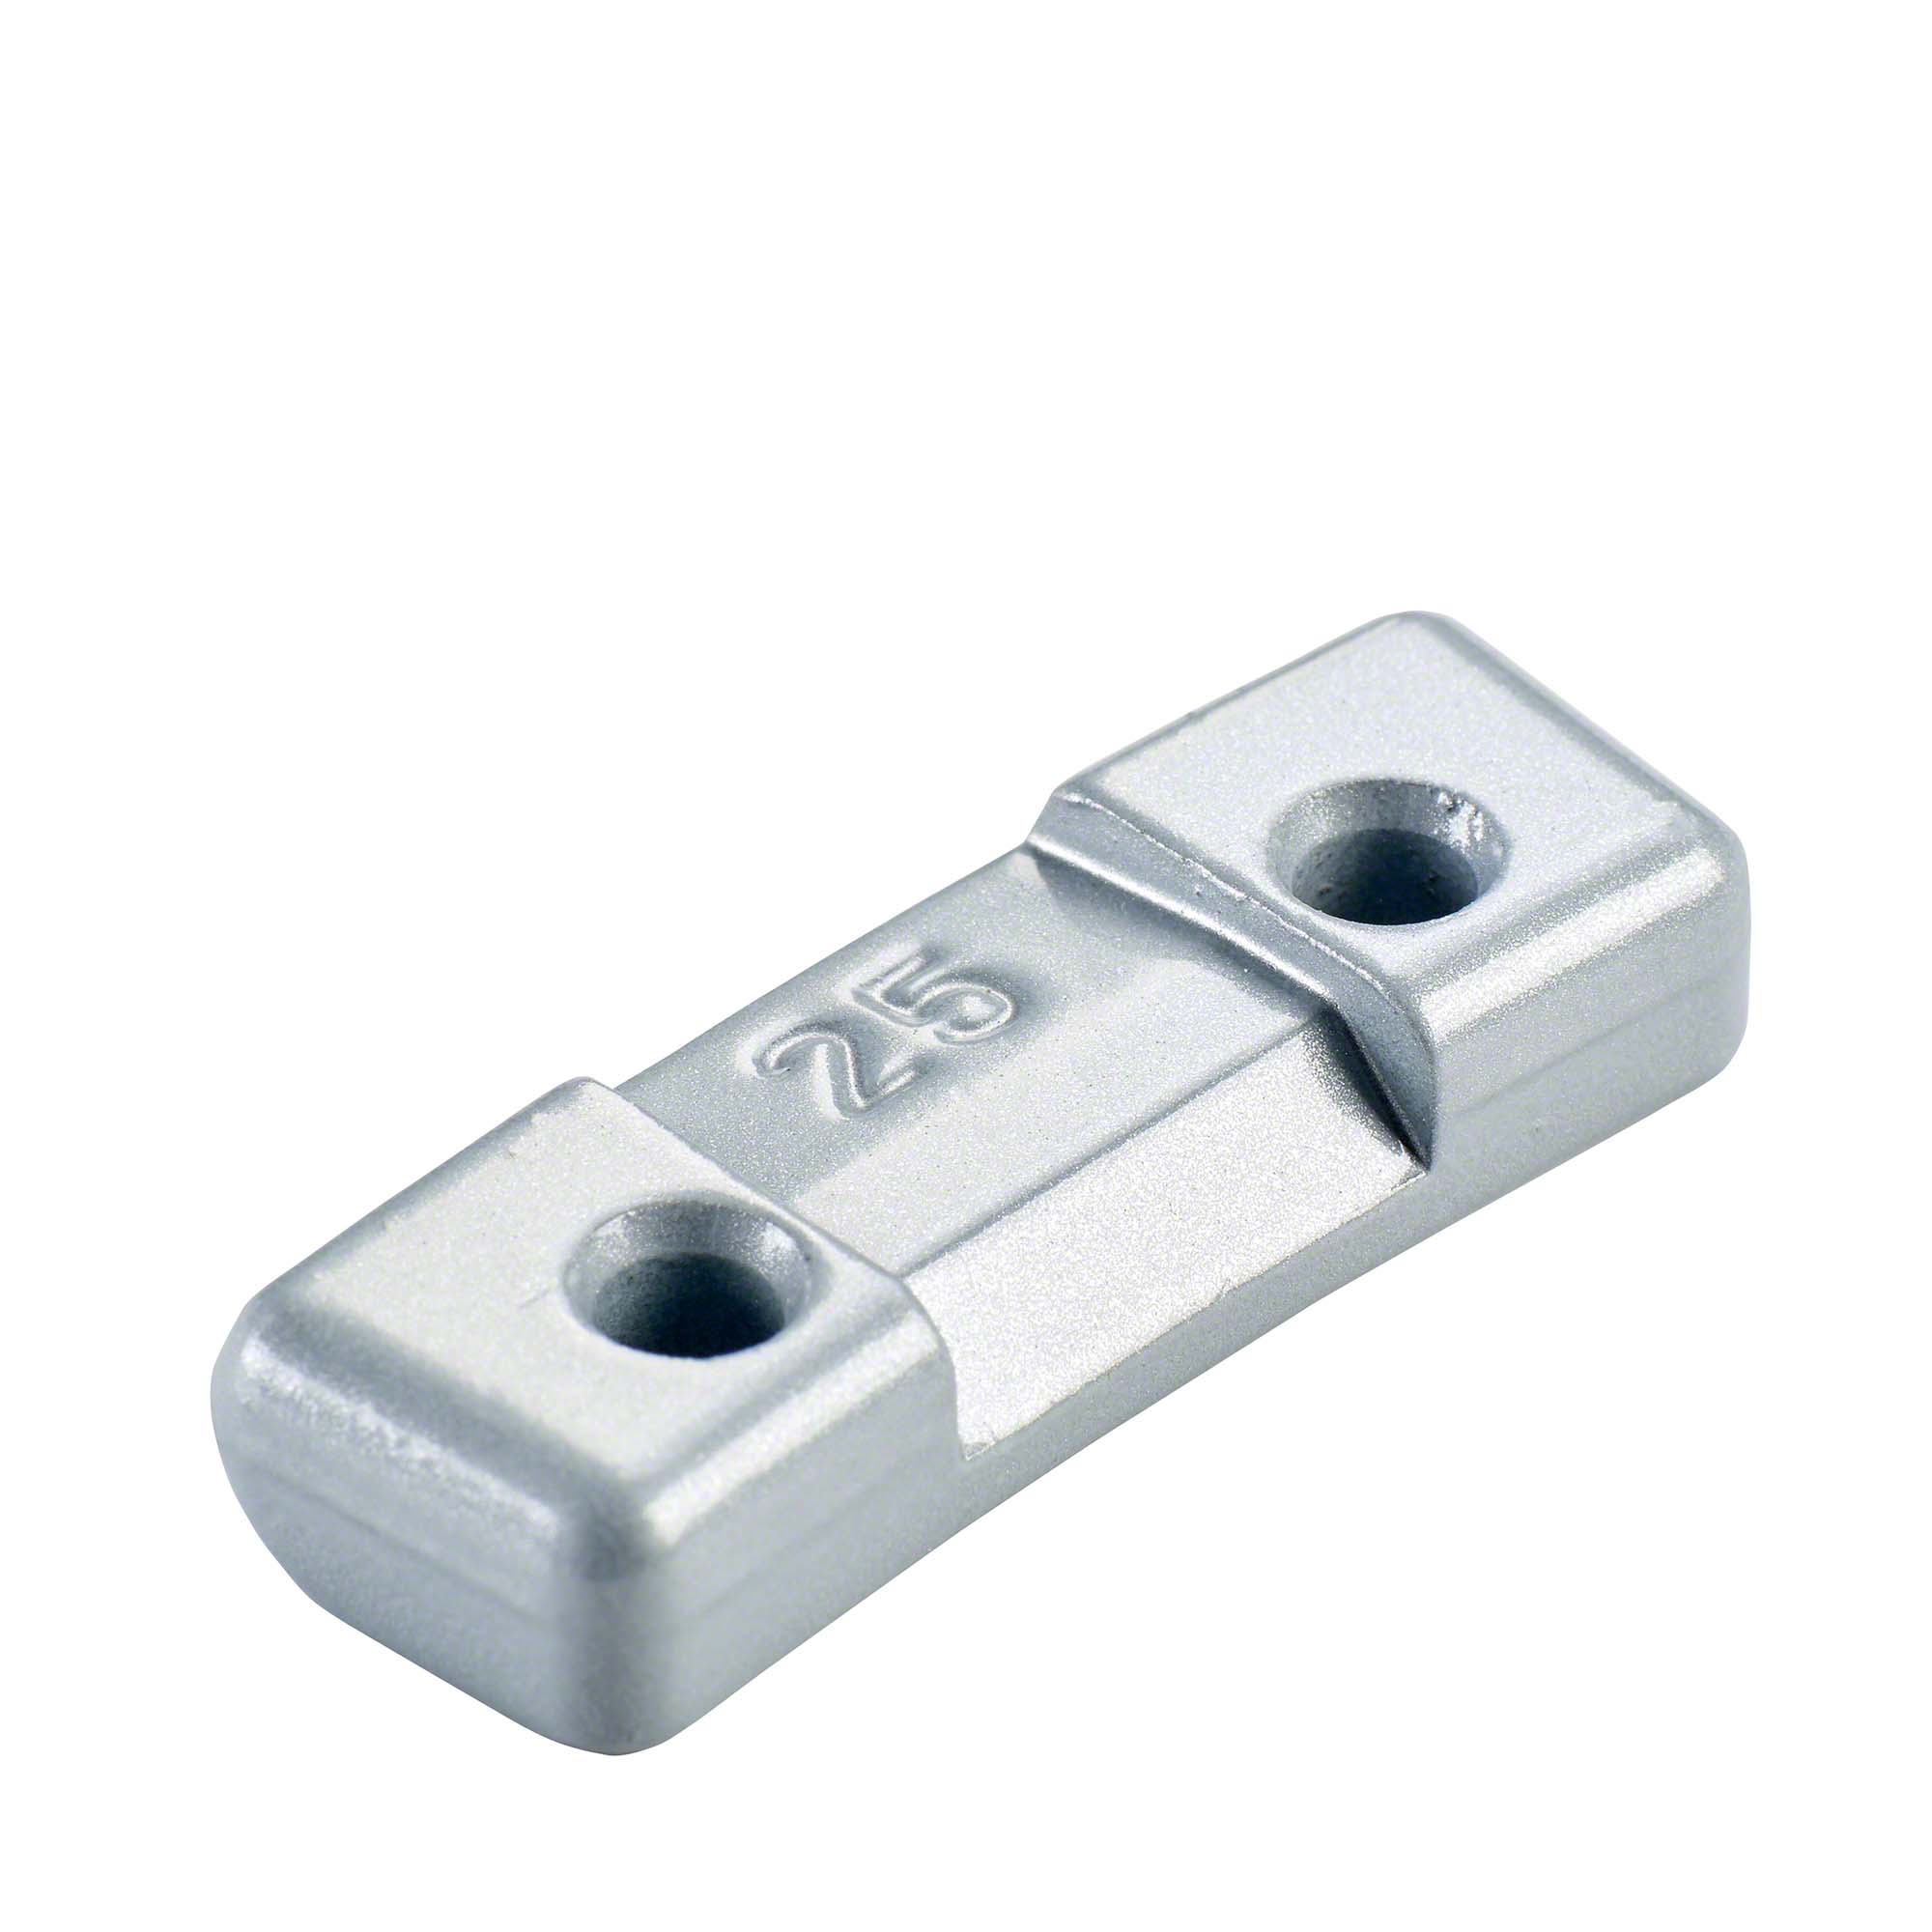 Safety weight - Typ 260, 25 g, zinc, silver